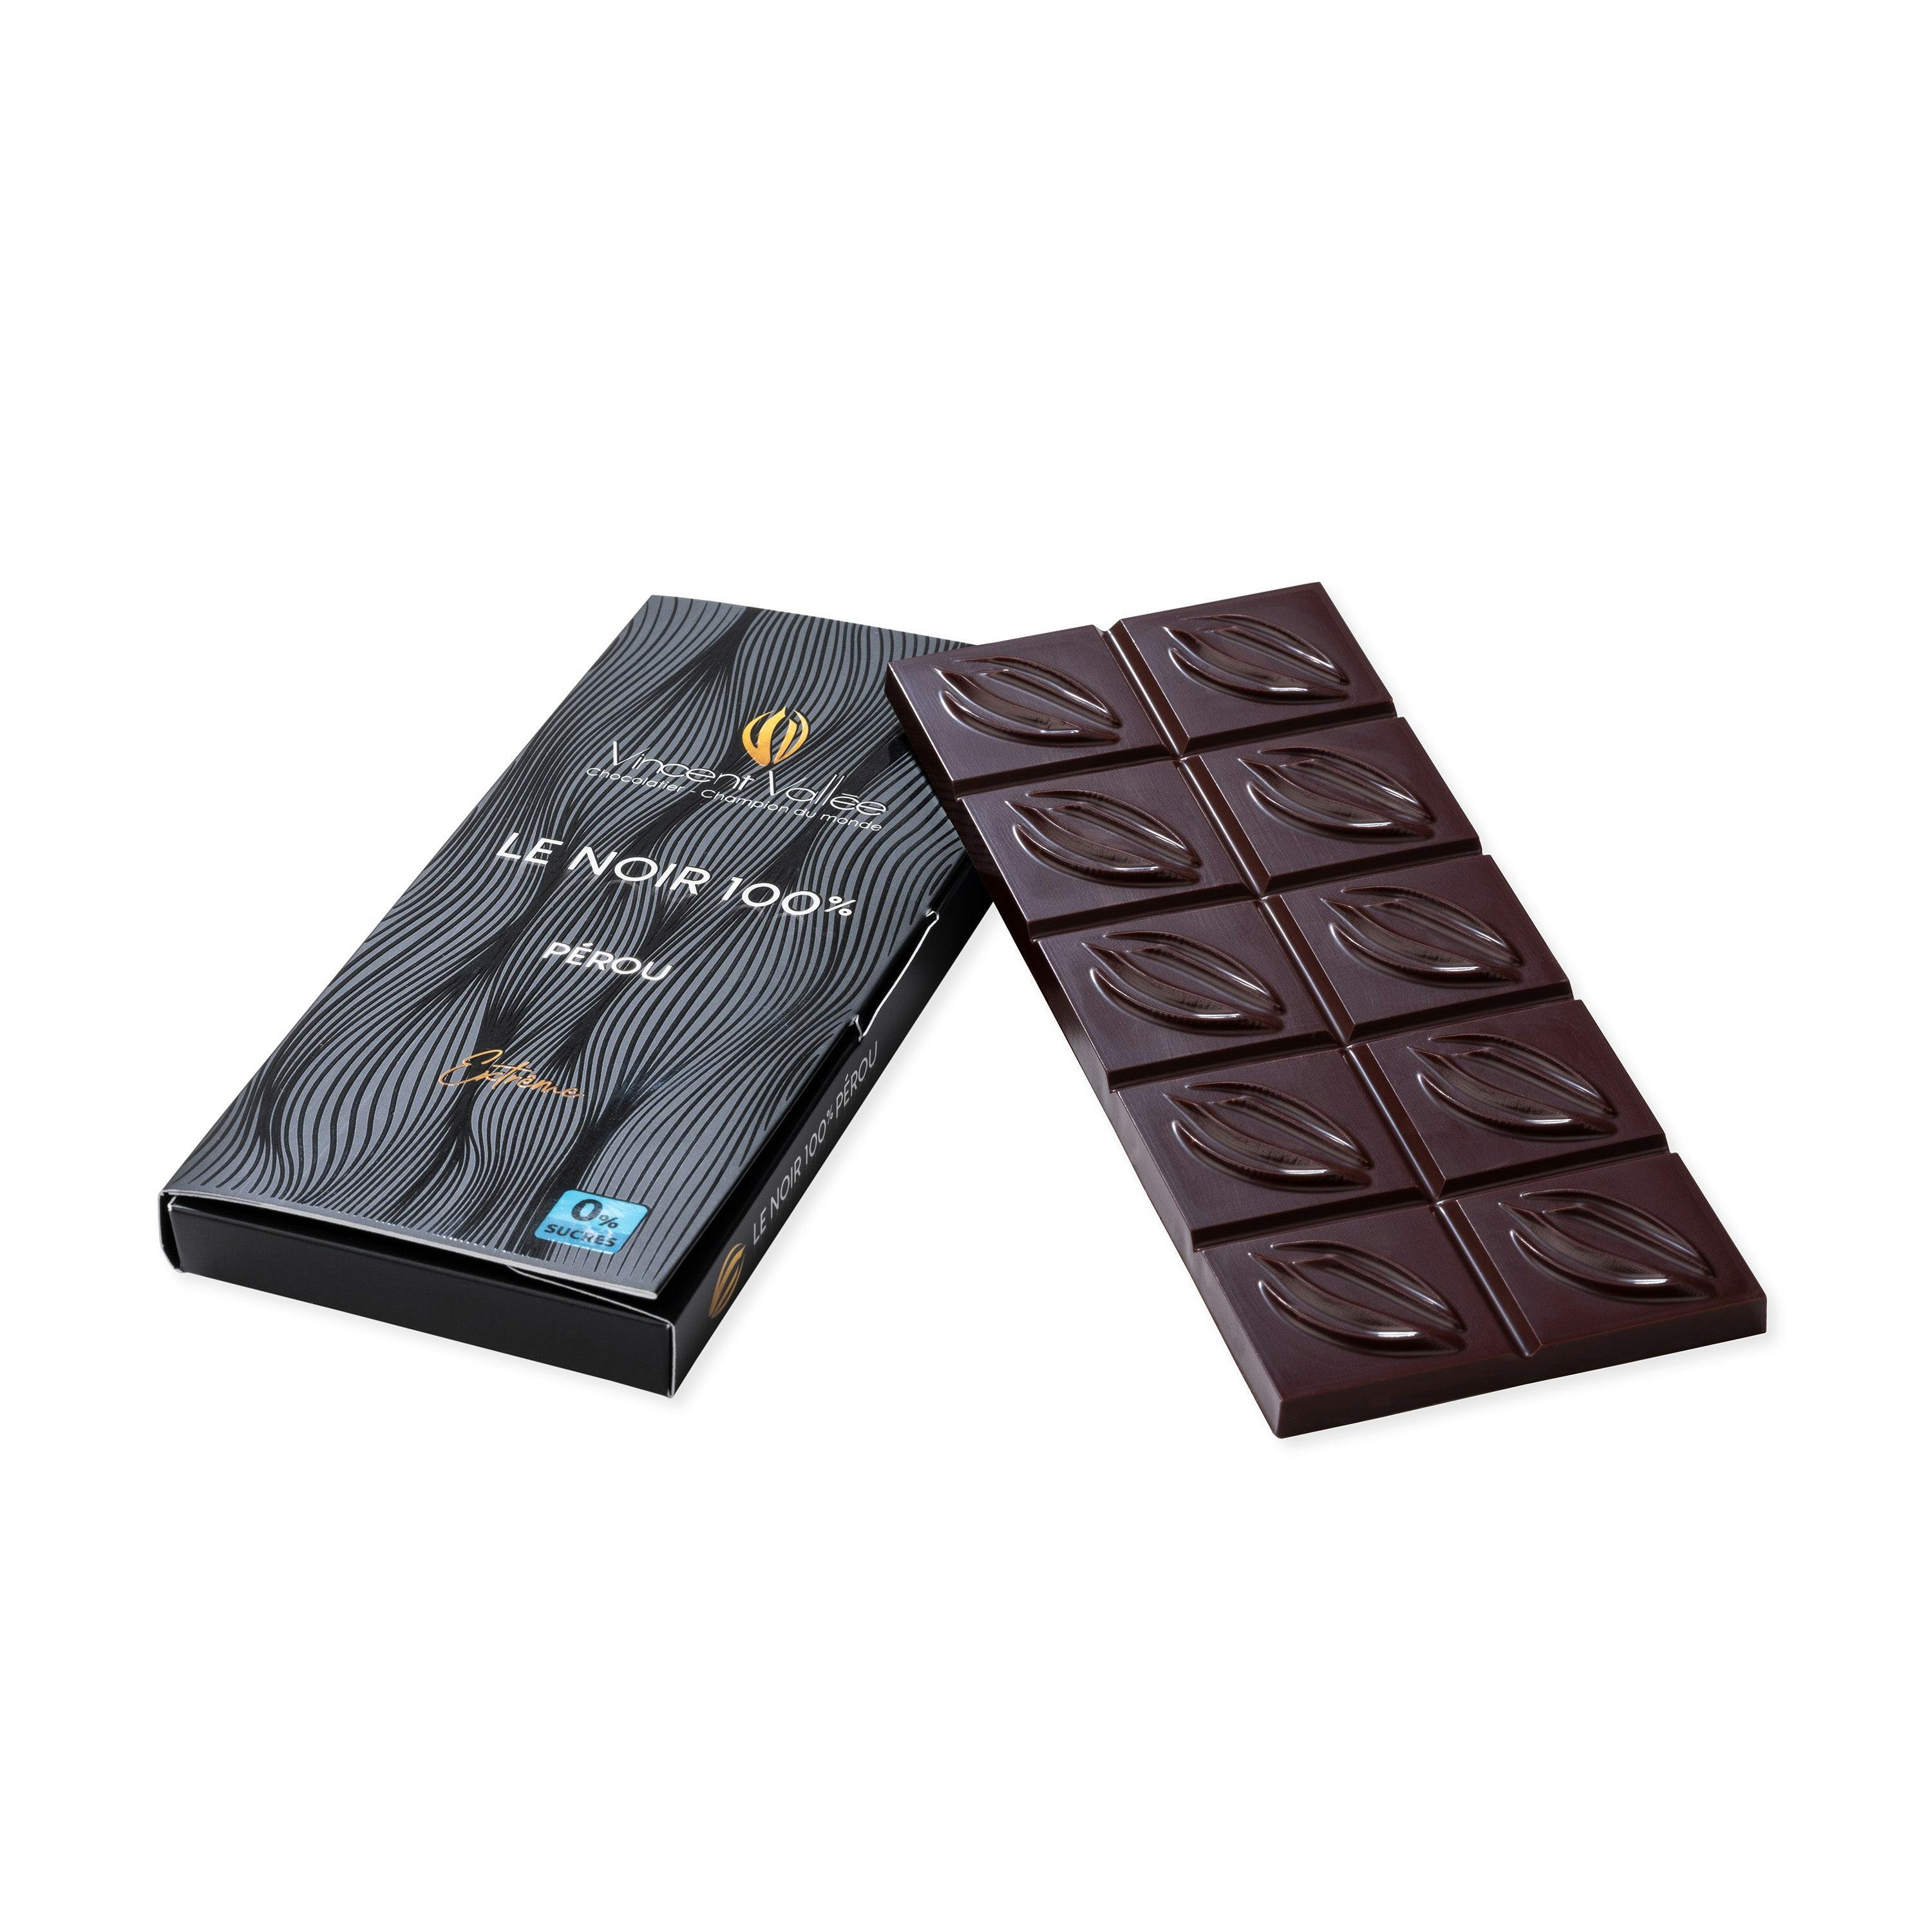 Pérou 100% (masse de cacao) - Vincent Vallée world champion chocolatier